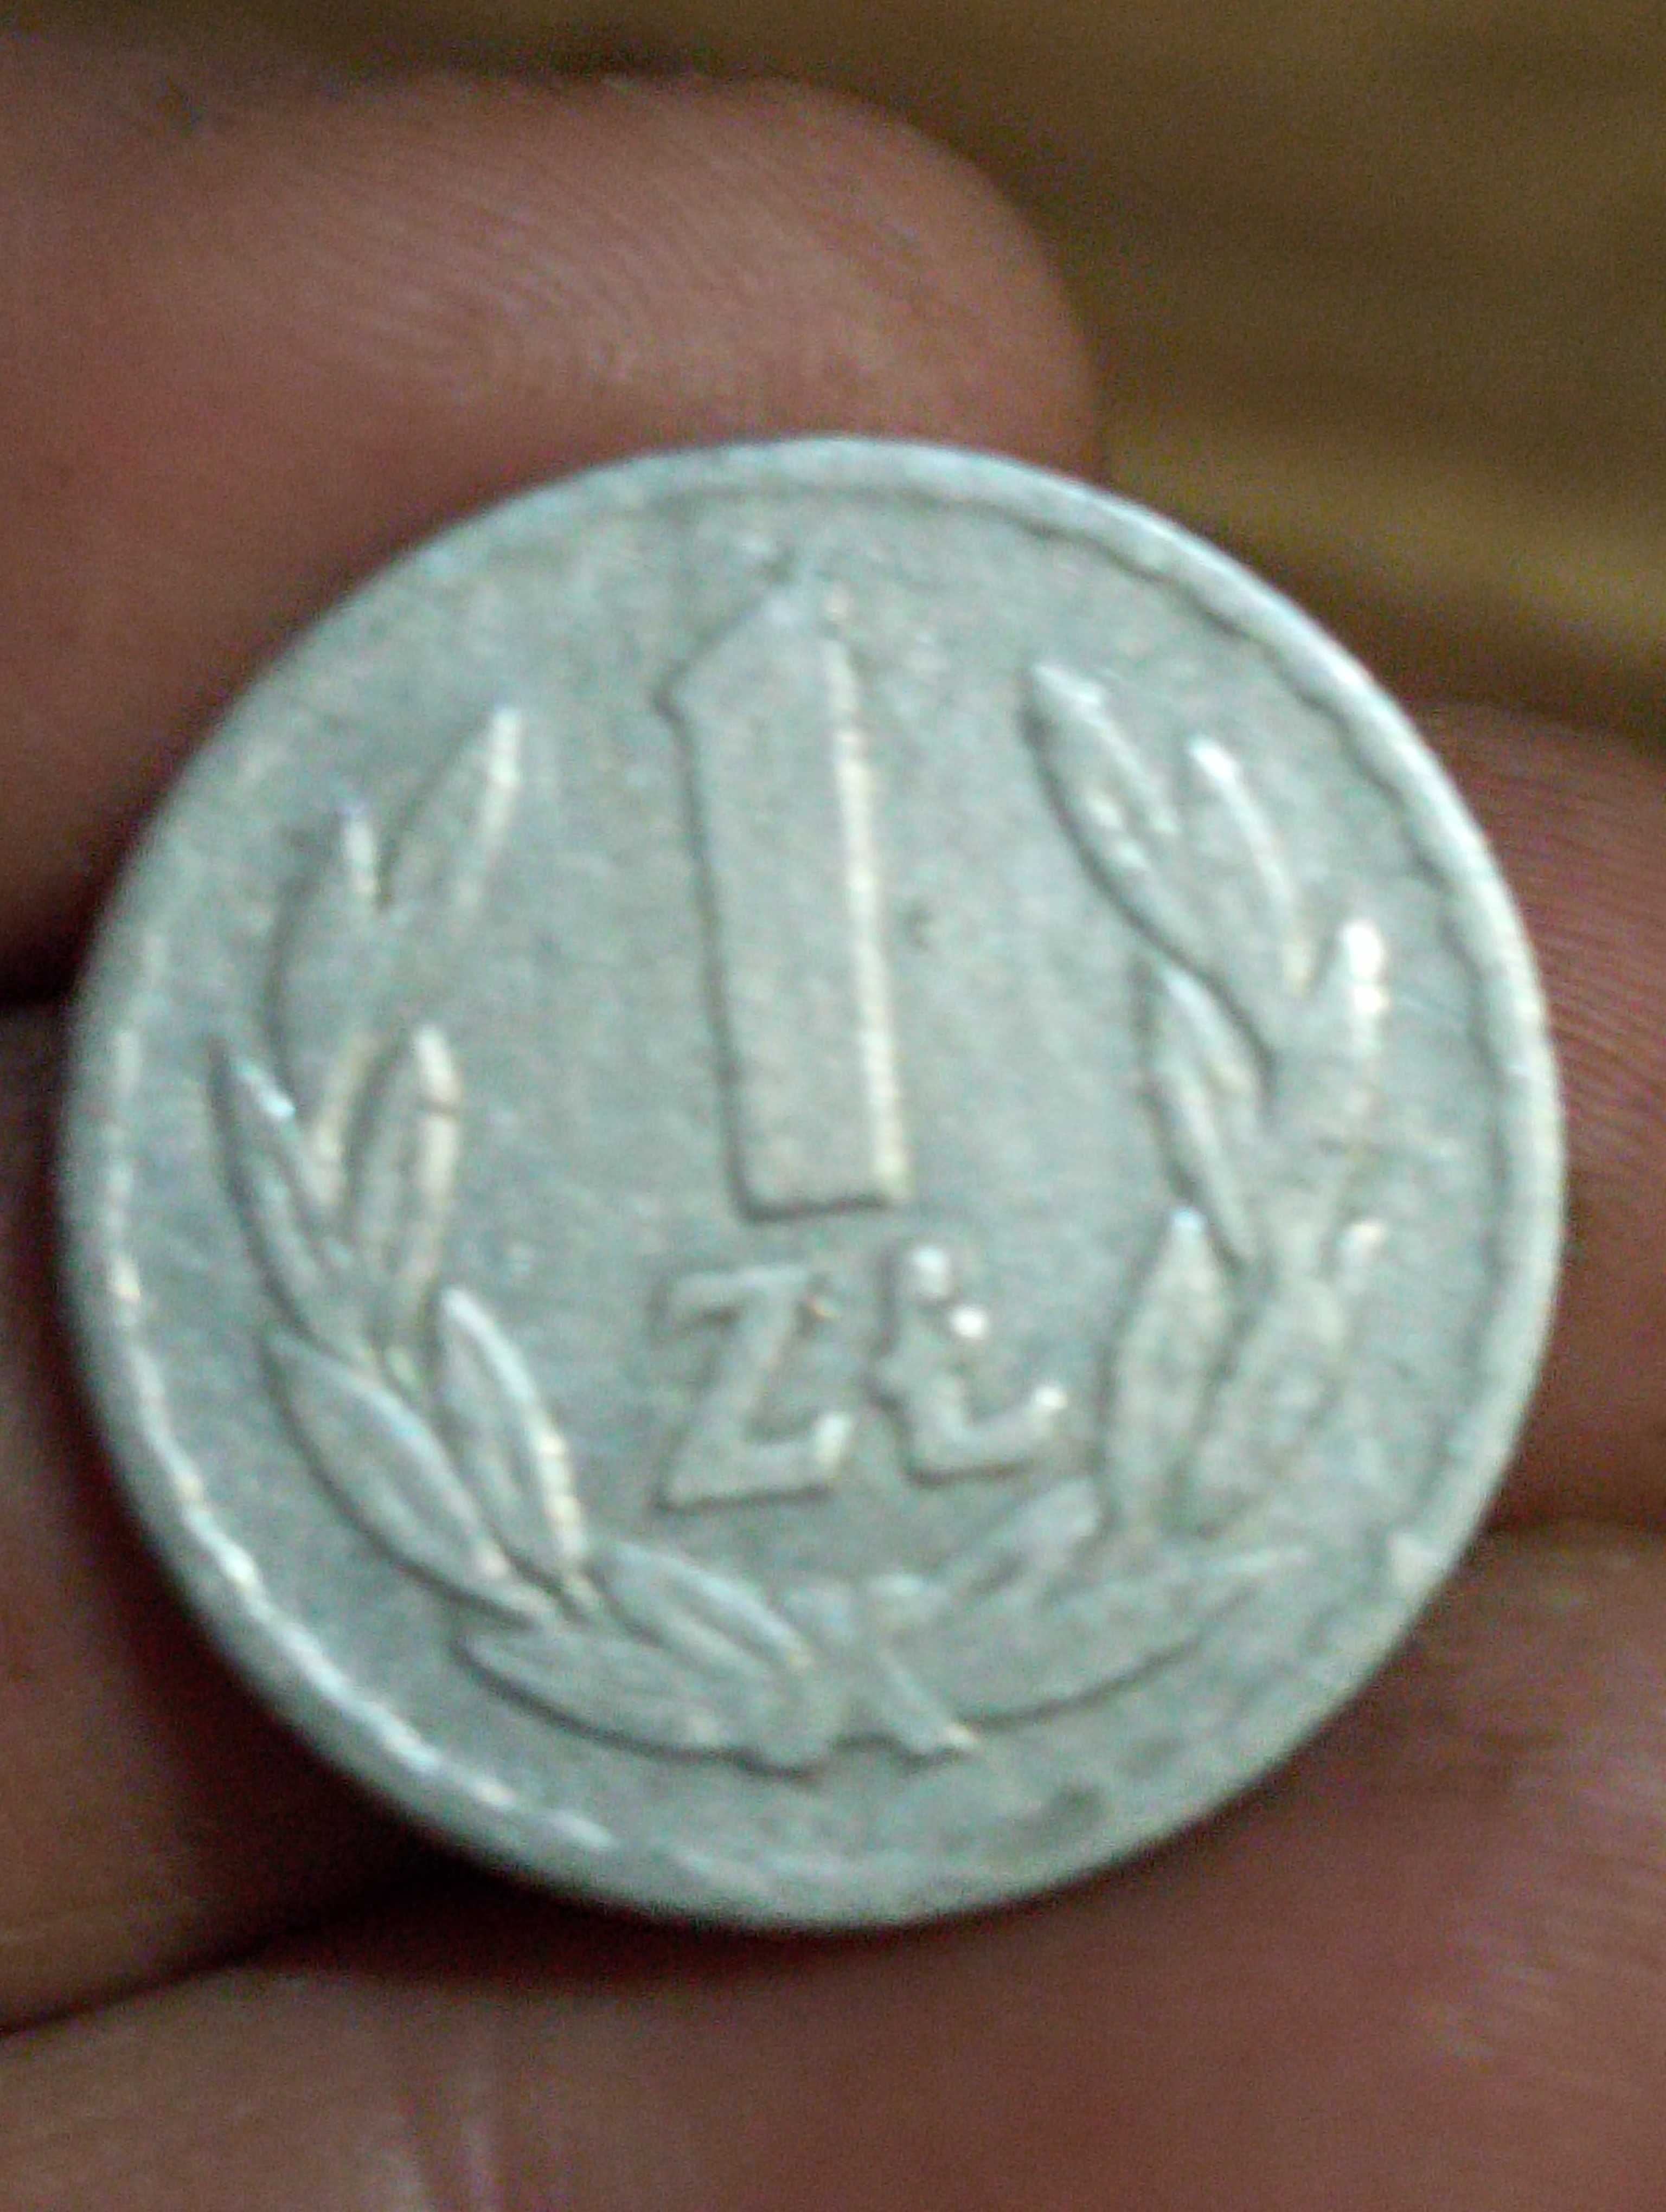 Moneta 1 zloty 1965 rok